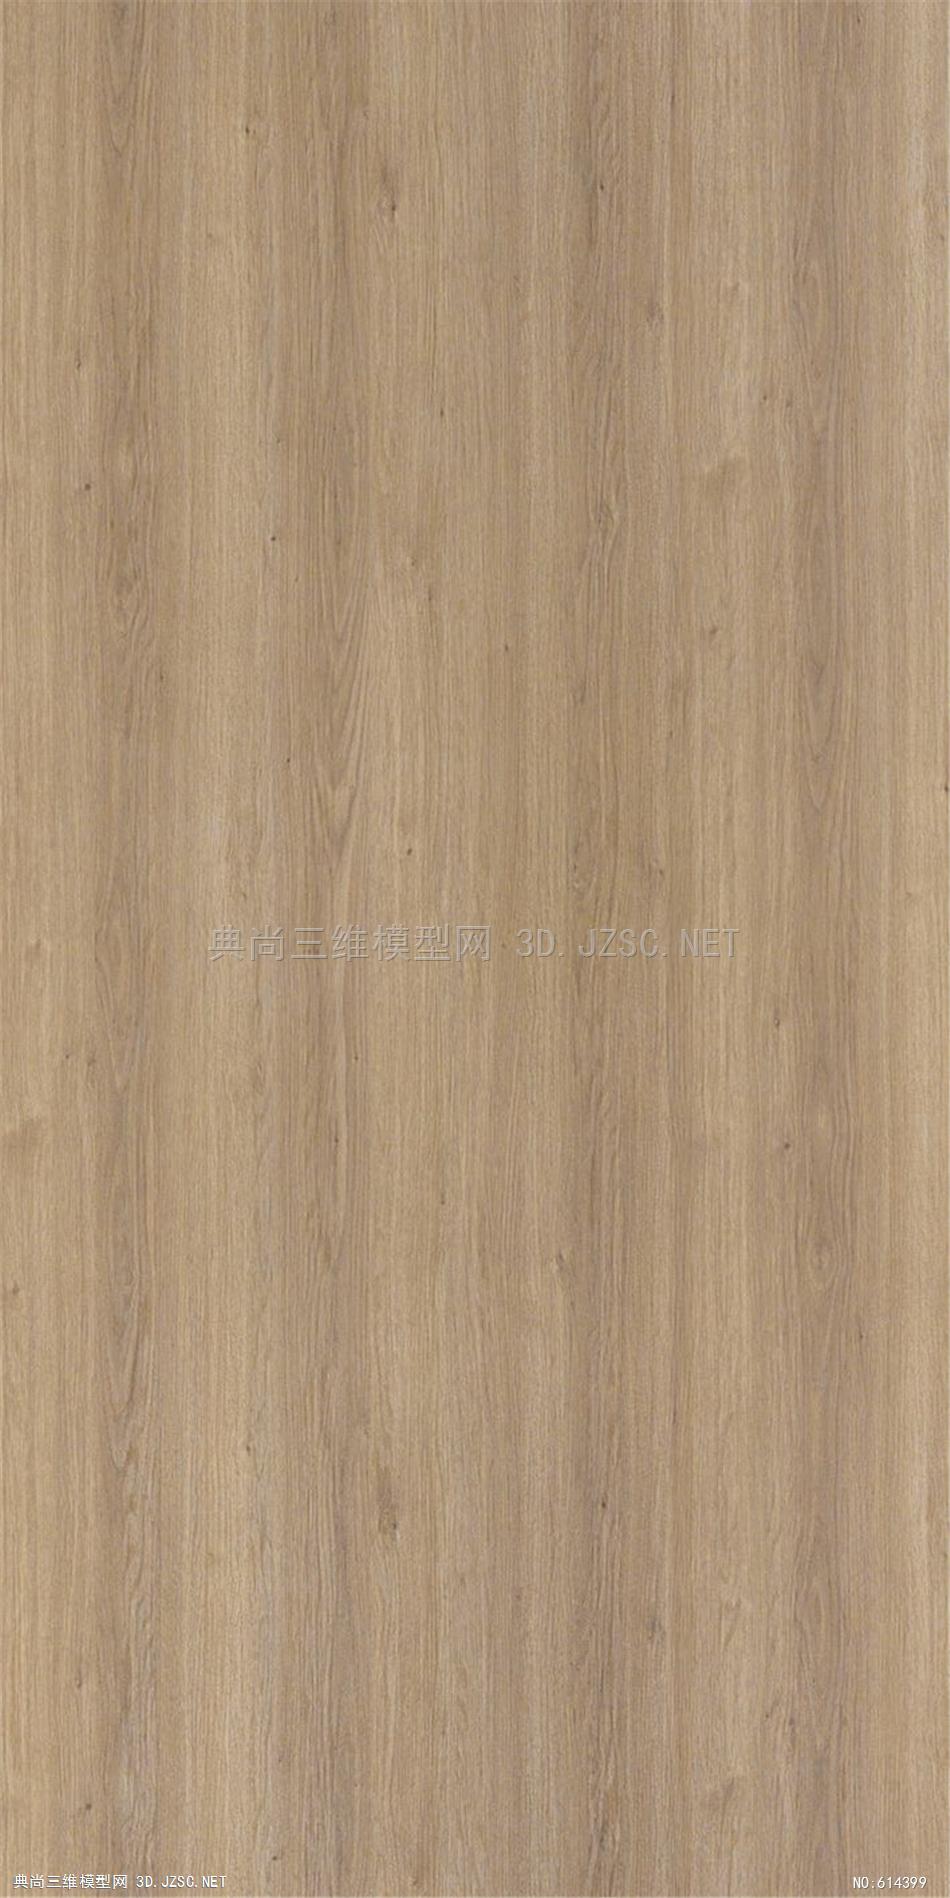 木饰面 木纹 木材 高清材质贴图 (286)材质贴图